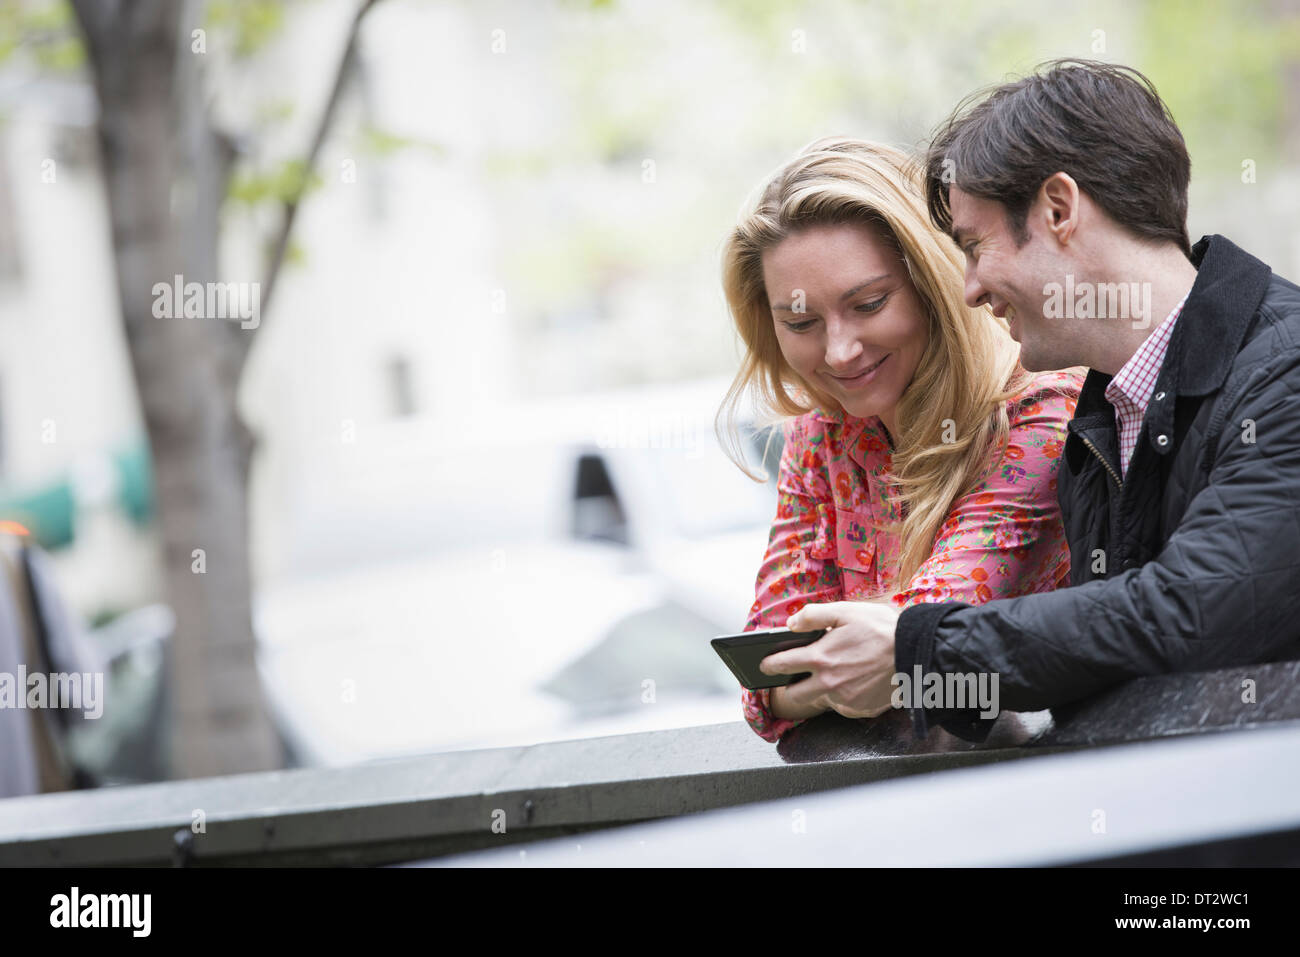 Vue sur cityYoung les gens à l'extérieur dans un parc de la ville deux personnes assises côte à côte en regardant un téléphone intelligent Banque D'Images